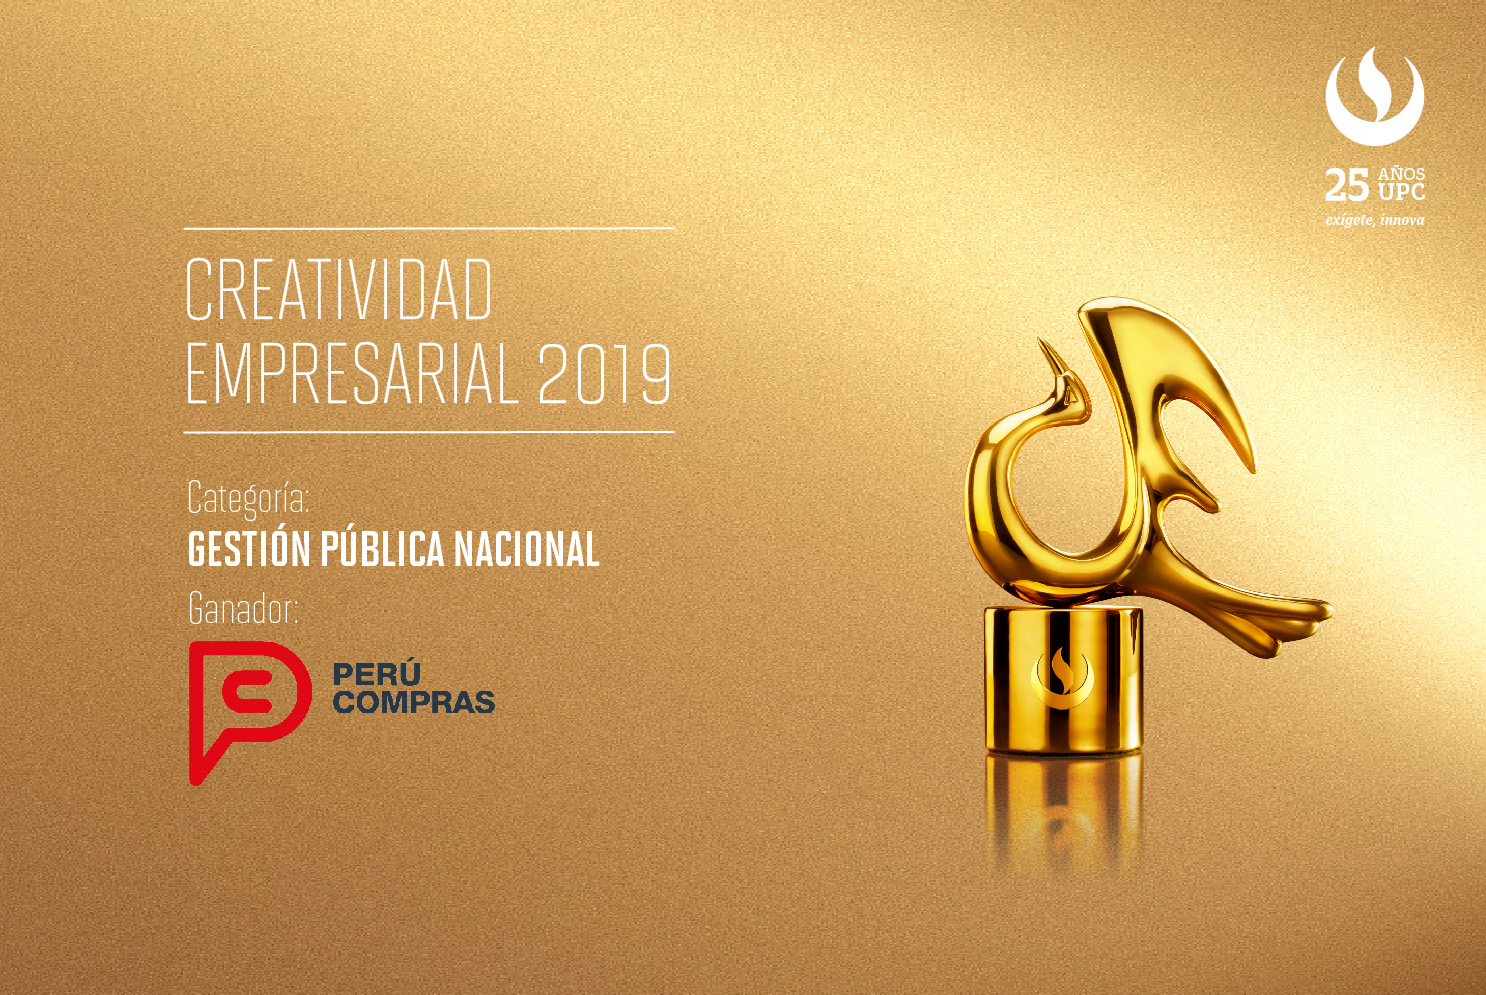 Creatividad Empresarial 2019: Perú Compras fue reconocido en la categoría Gestión Pública Nacional